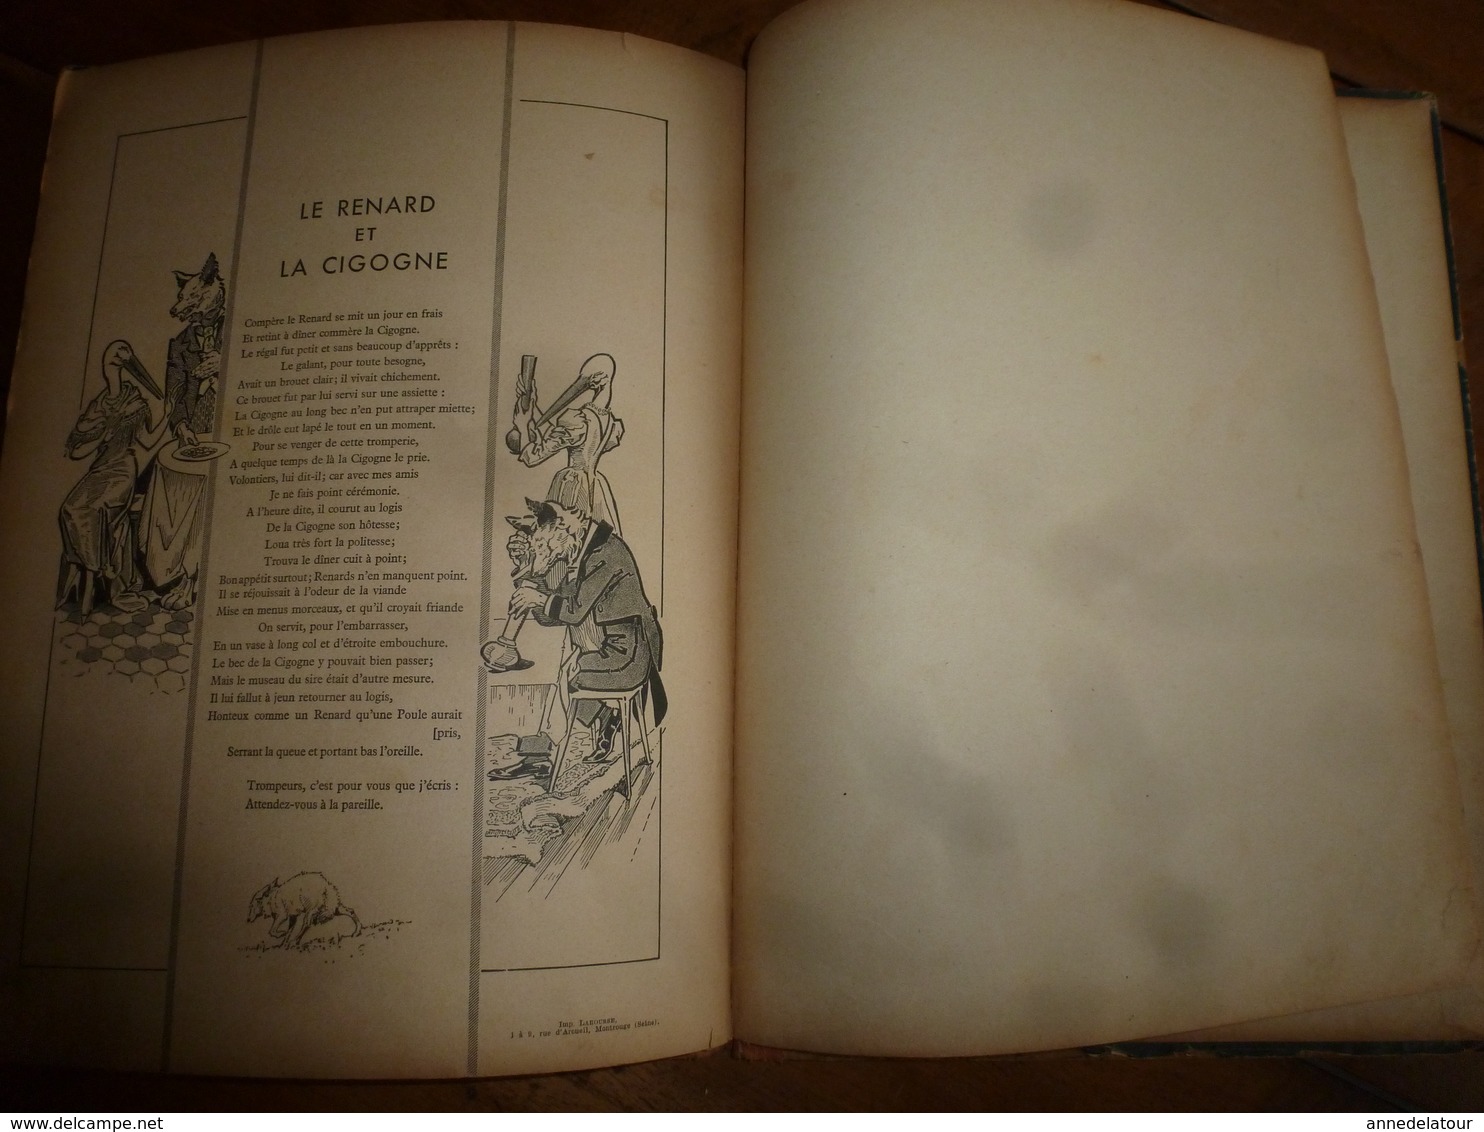 Dédicacé par l'illustrateur Georges Ripart à son petit ami : QUELQUES FABLES DE LA FONTAINE